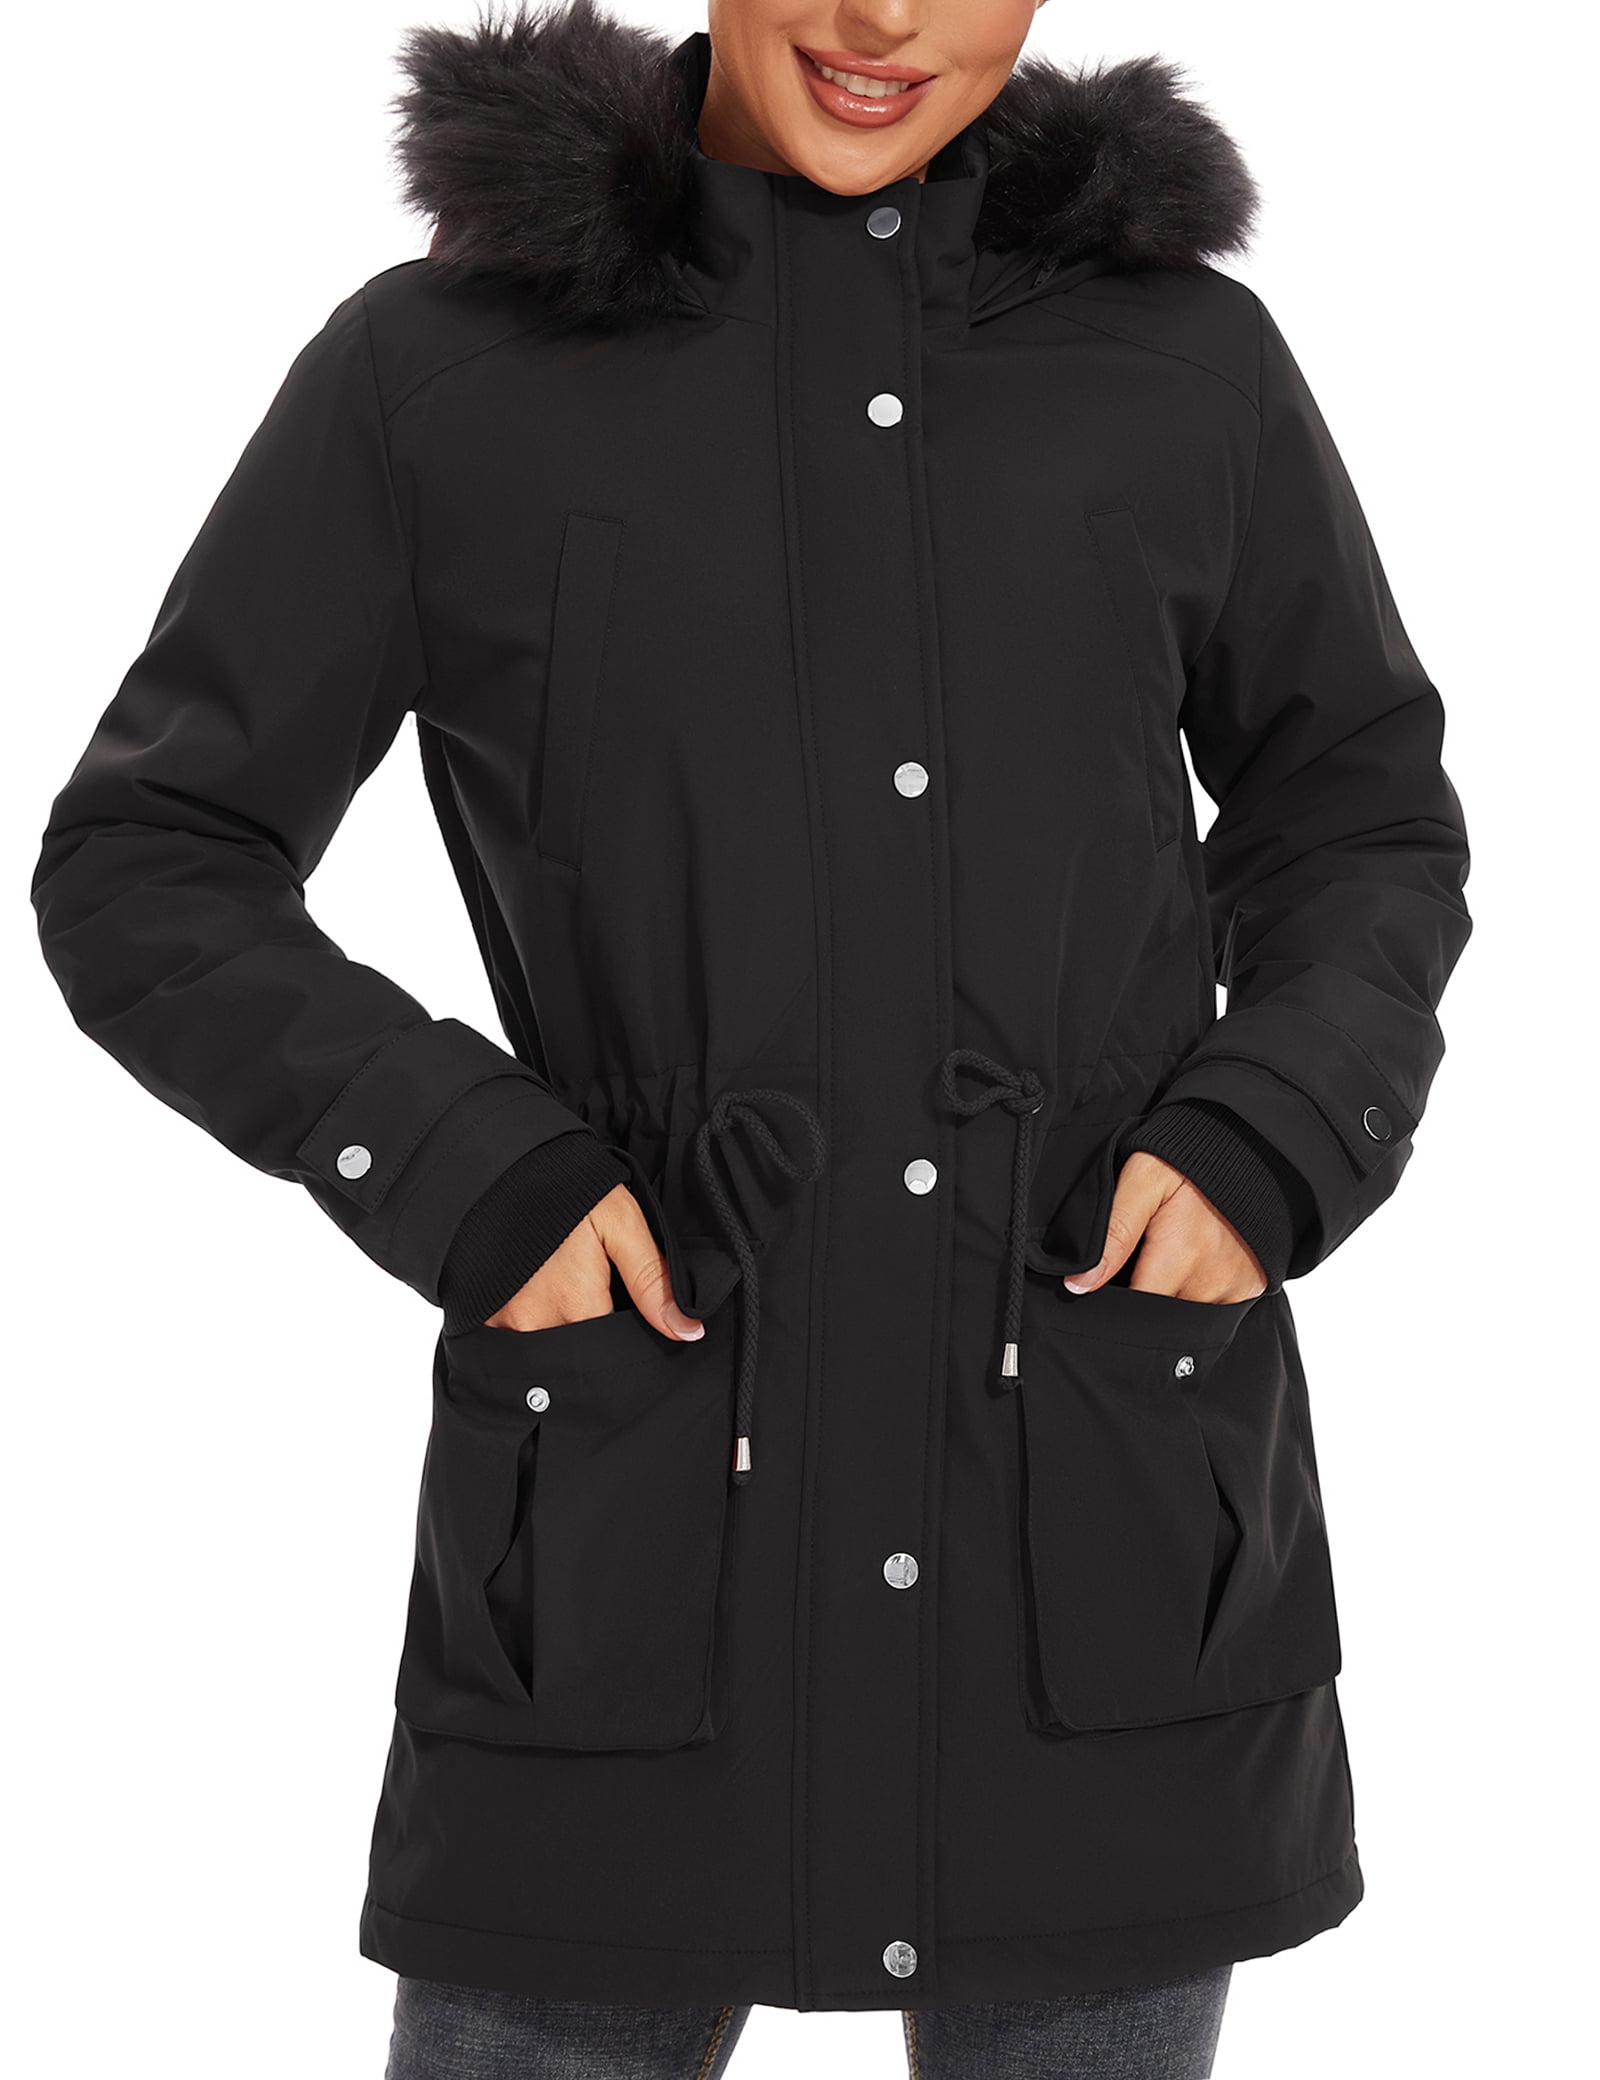 ROYAL MATRIX Women's Winter Coats Fleece Lined Parka Jacket Hooded Long  Winter W